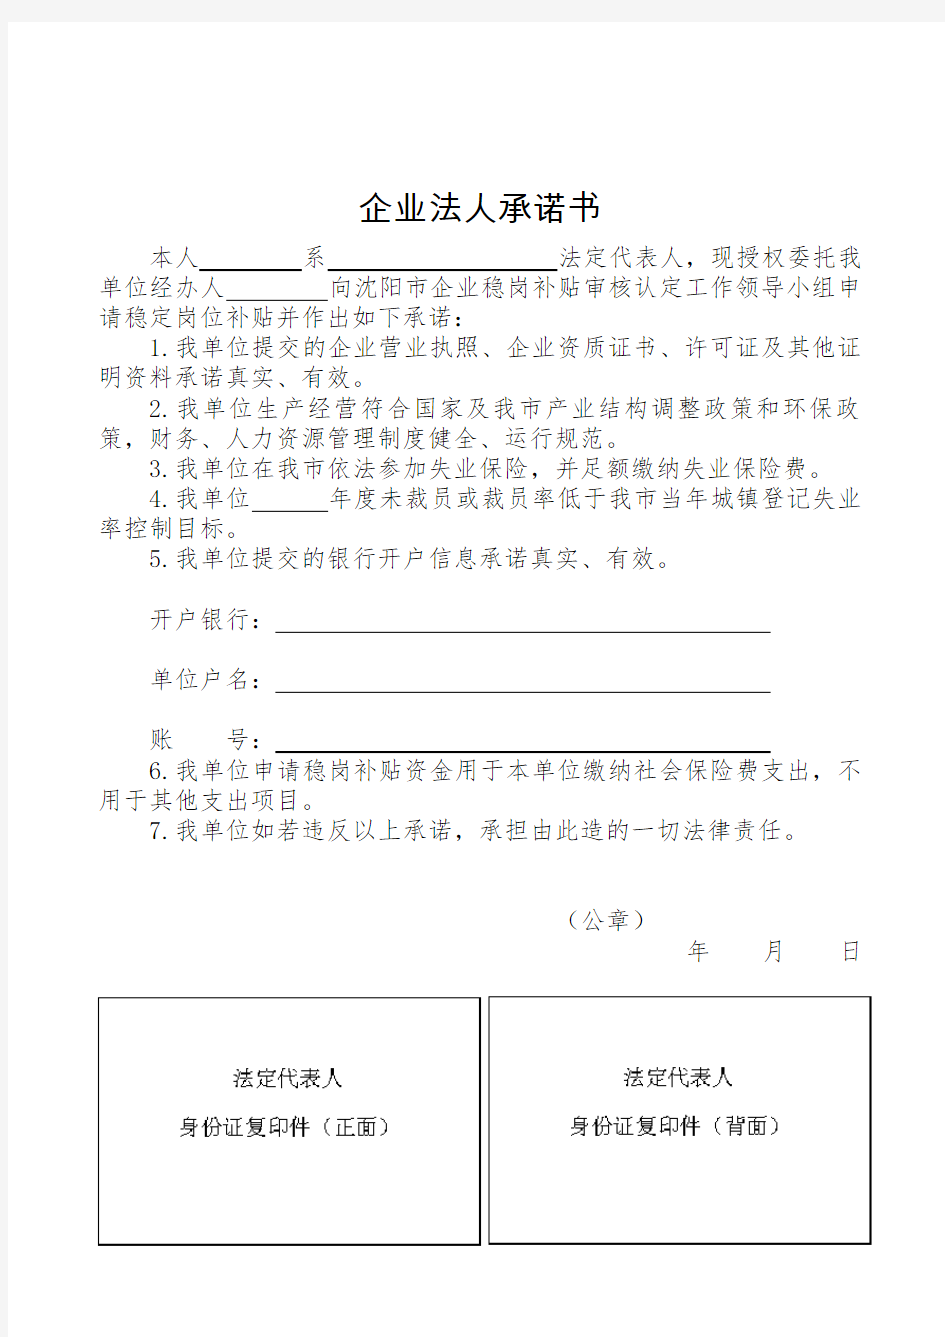 沈阳市企业稳岗补贴申请审批表及企业法人承诺书